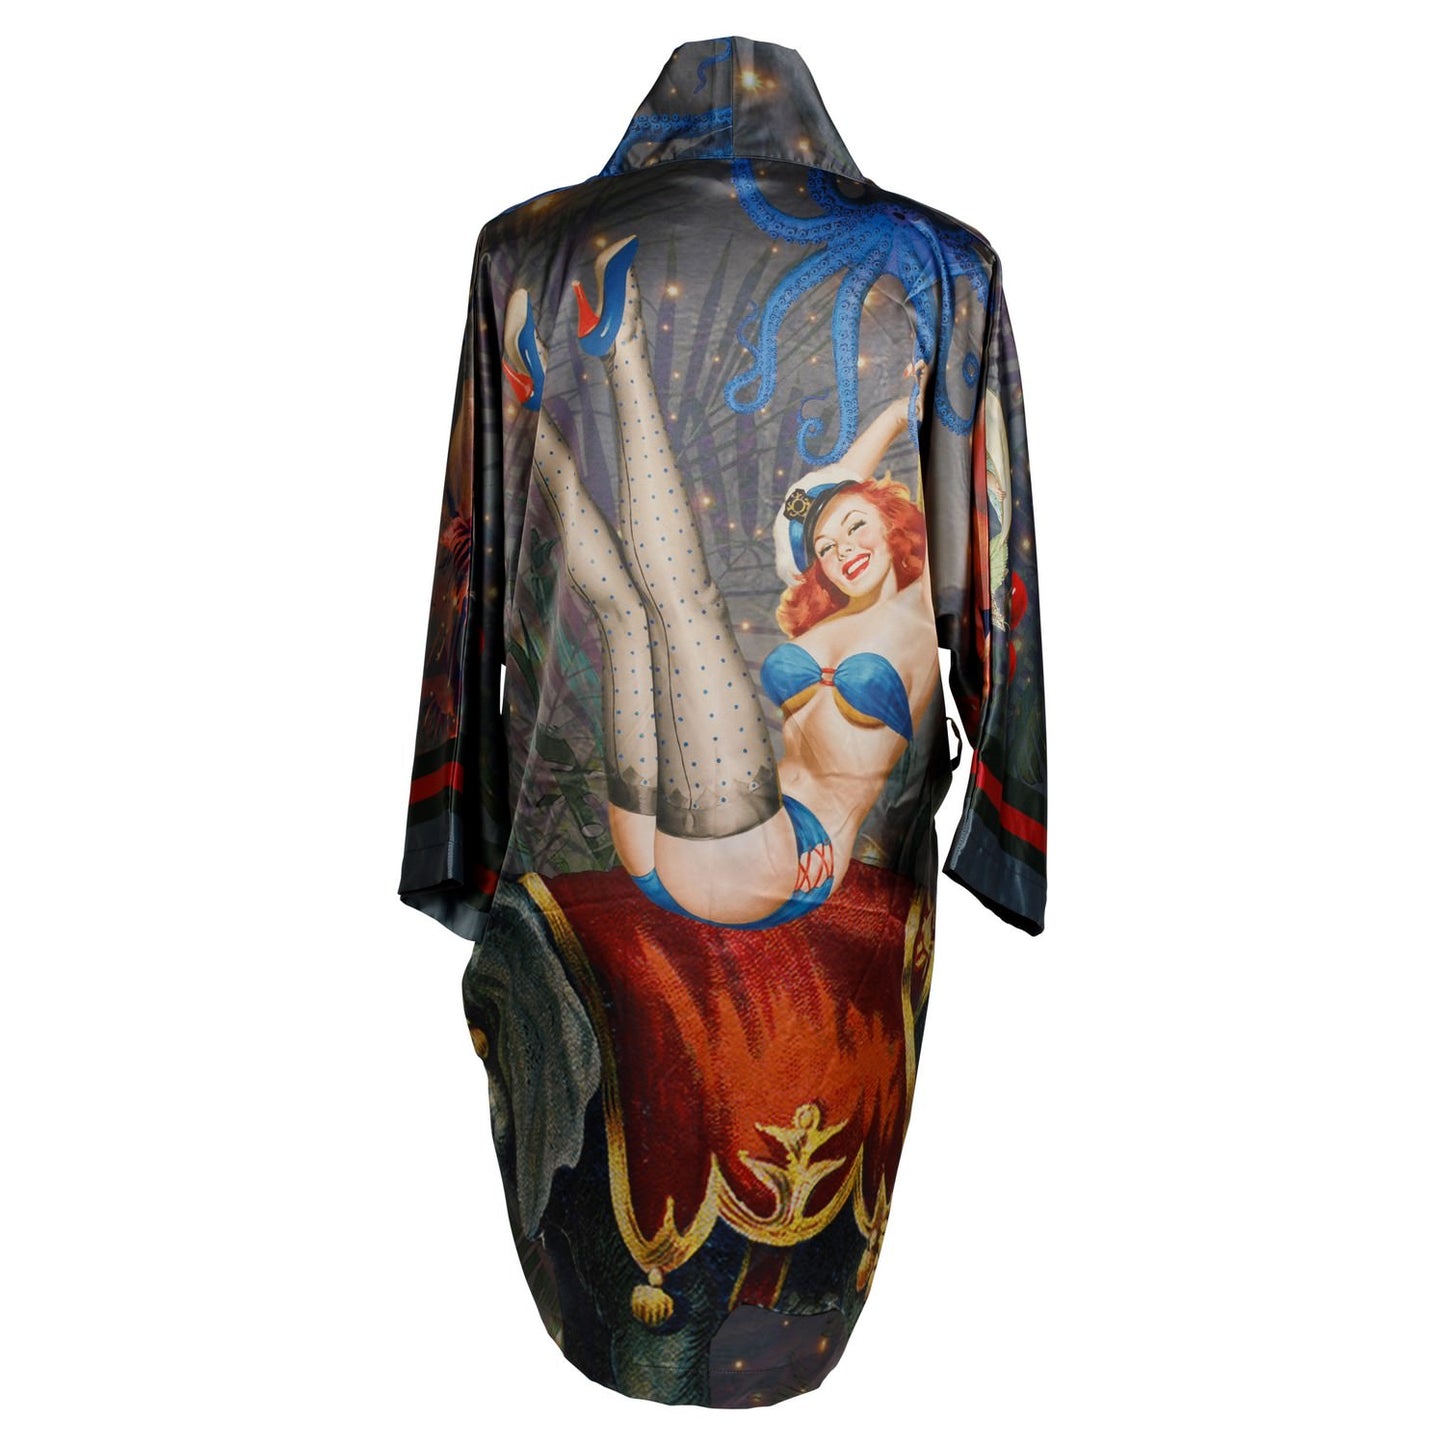 Back view of luxury 100% silk kimono in a maximalist retro pinup design 